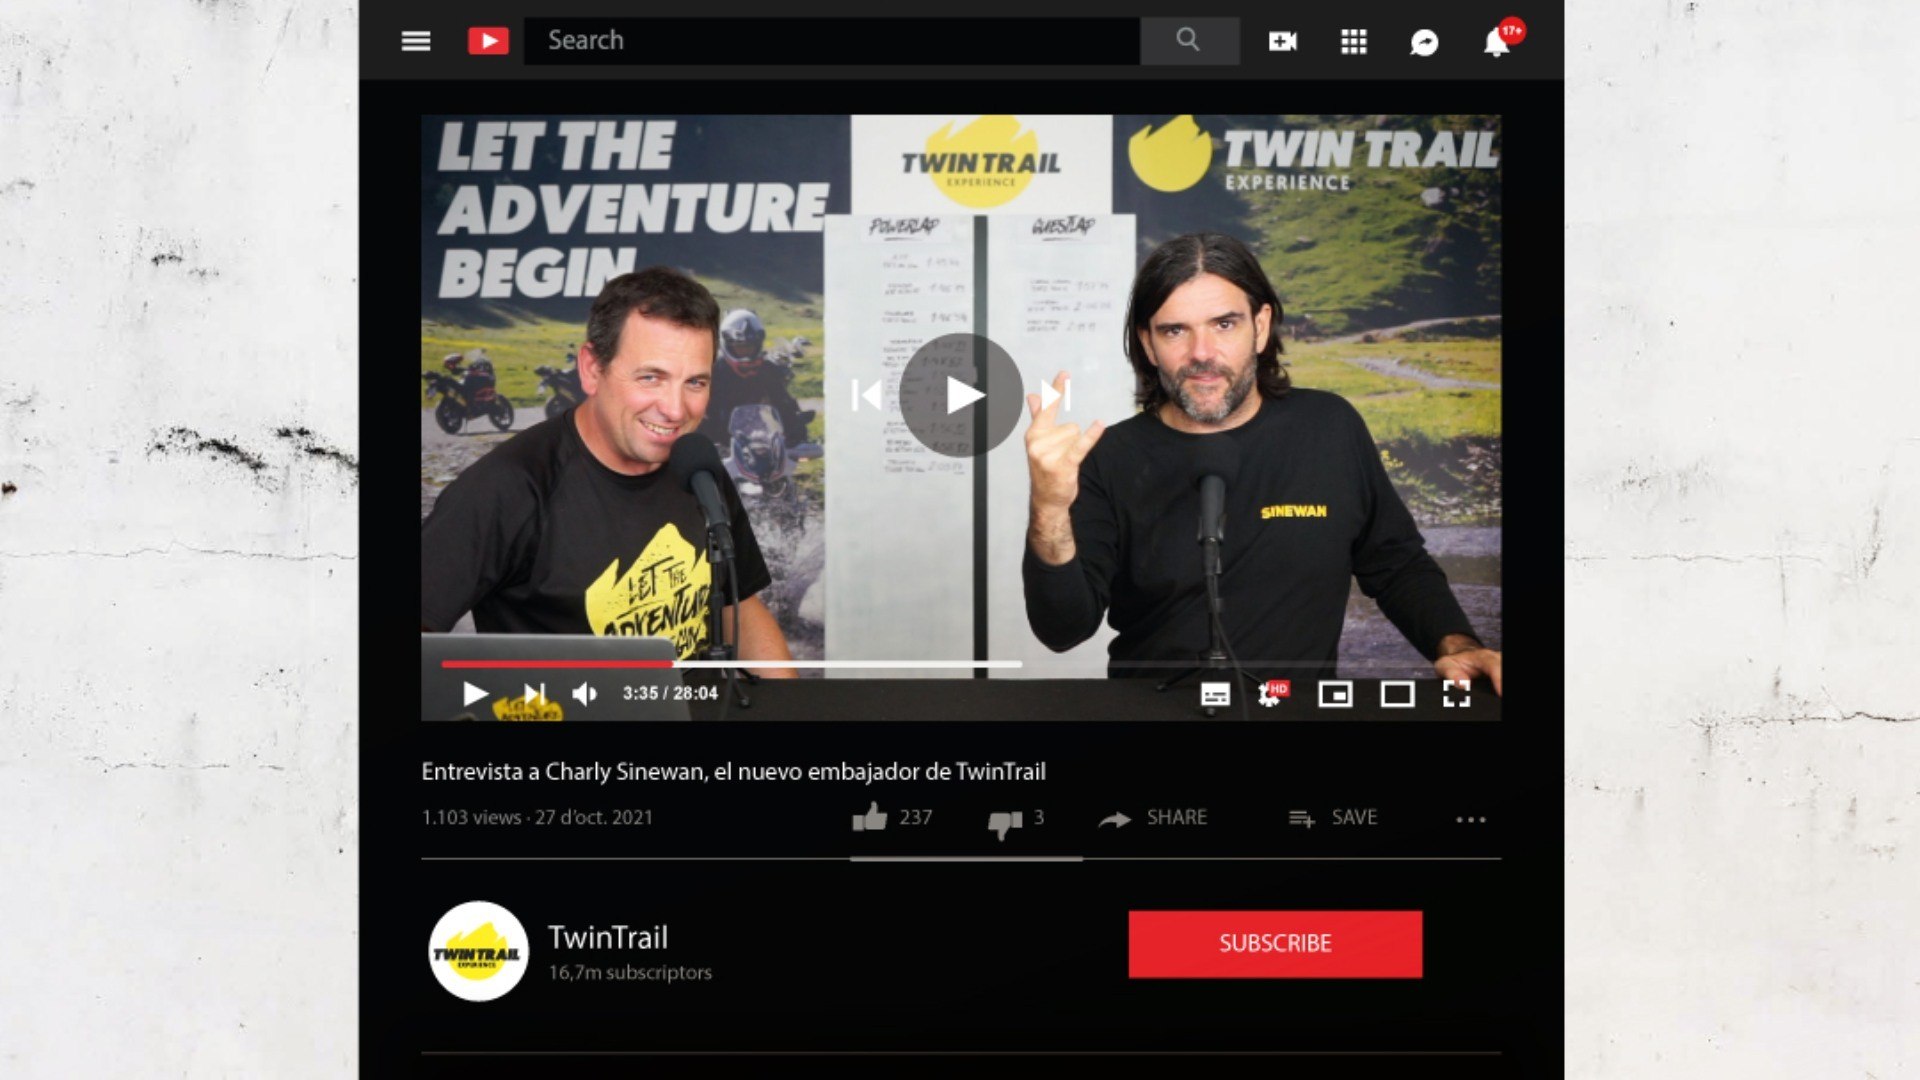 TwinTrail, distribuidor exclusivo de EMD Adventure Gear España